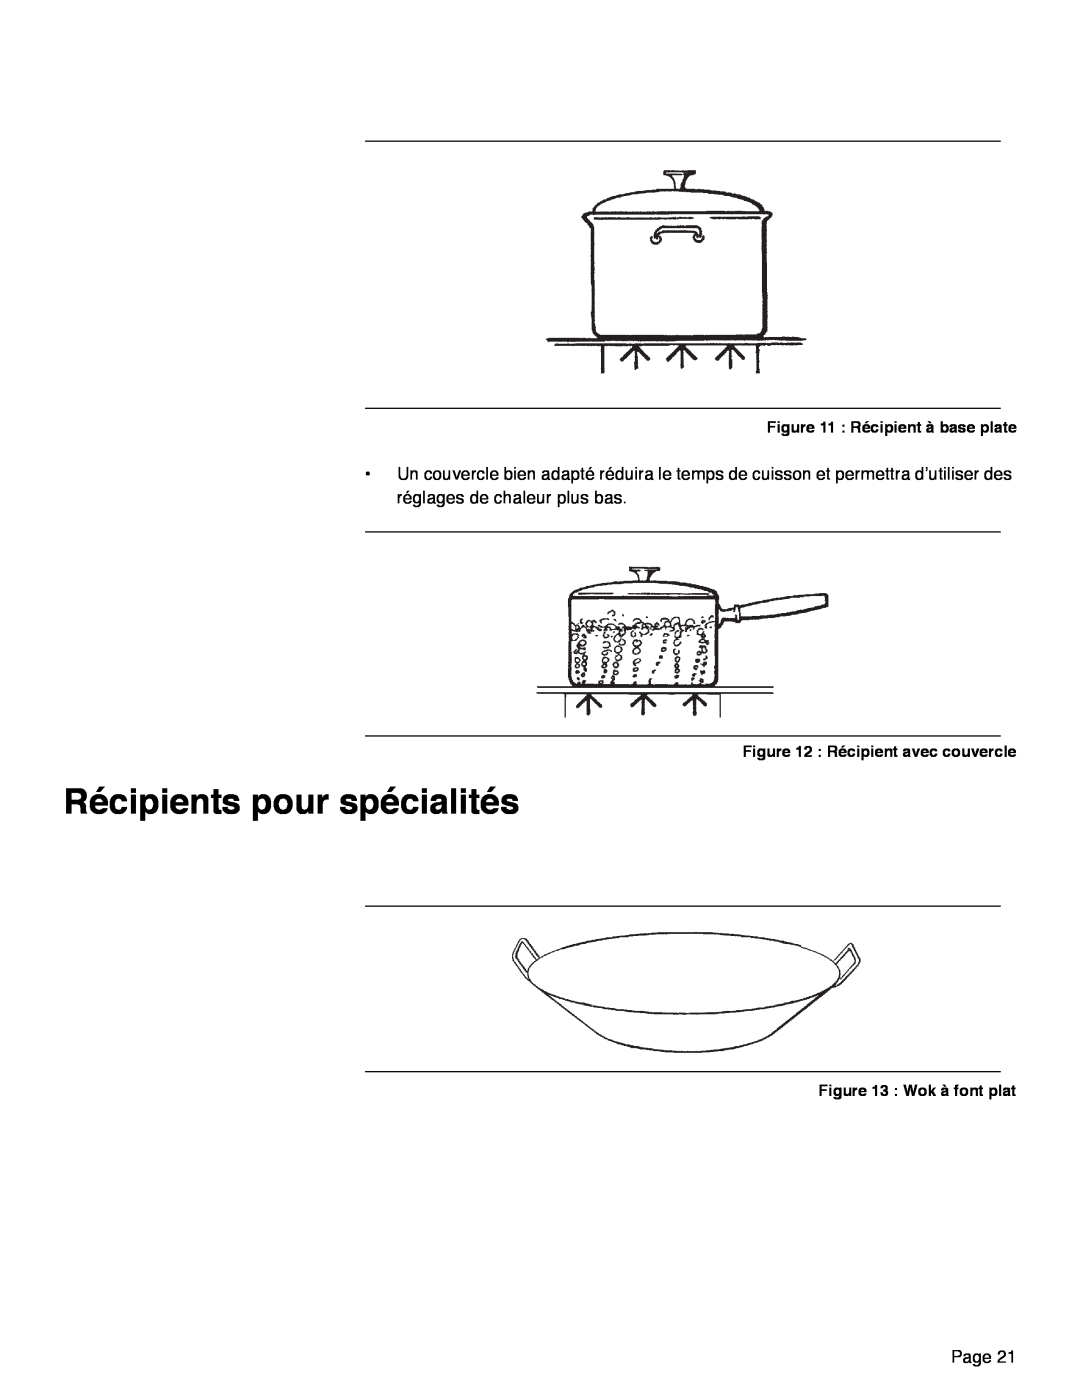 Thermador PRD36 manual Récipients pour spécialités, Page, Récipient à base plate, Récipient avec couvercle, Wok à font plat 